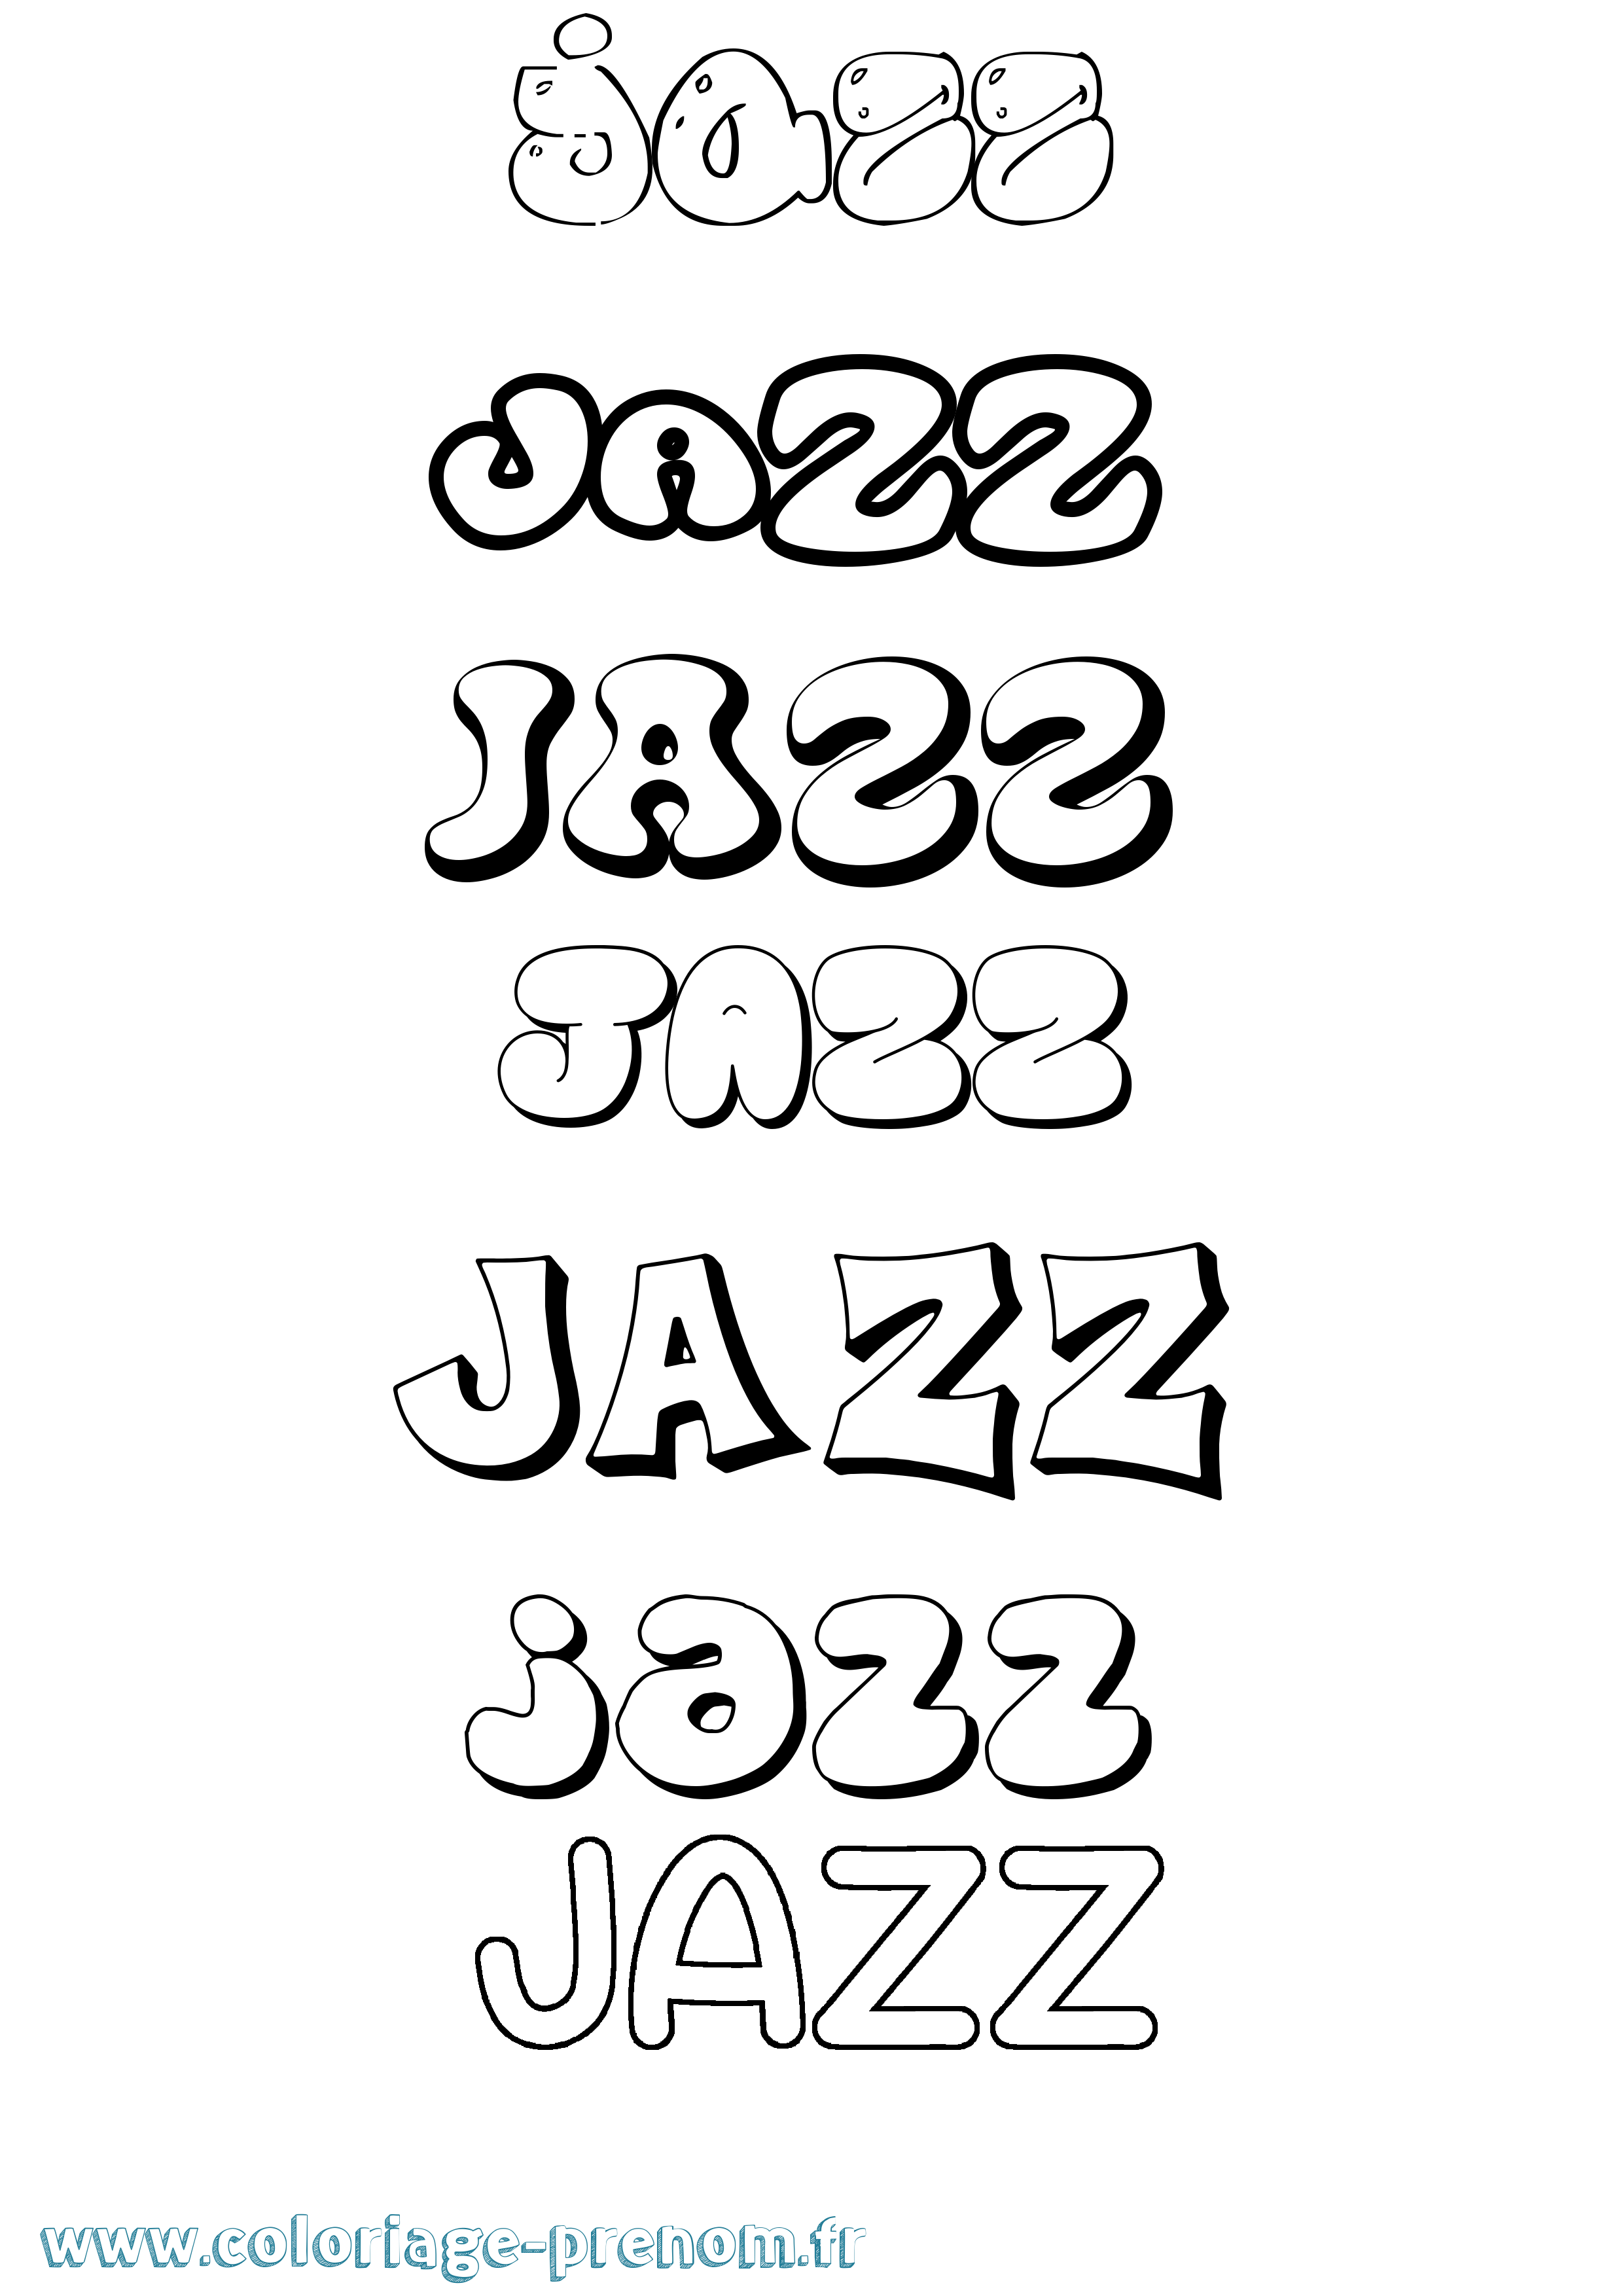 Coloriage prénom Jazz Bubble